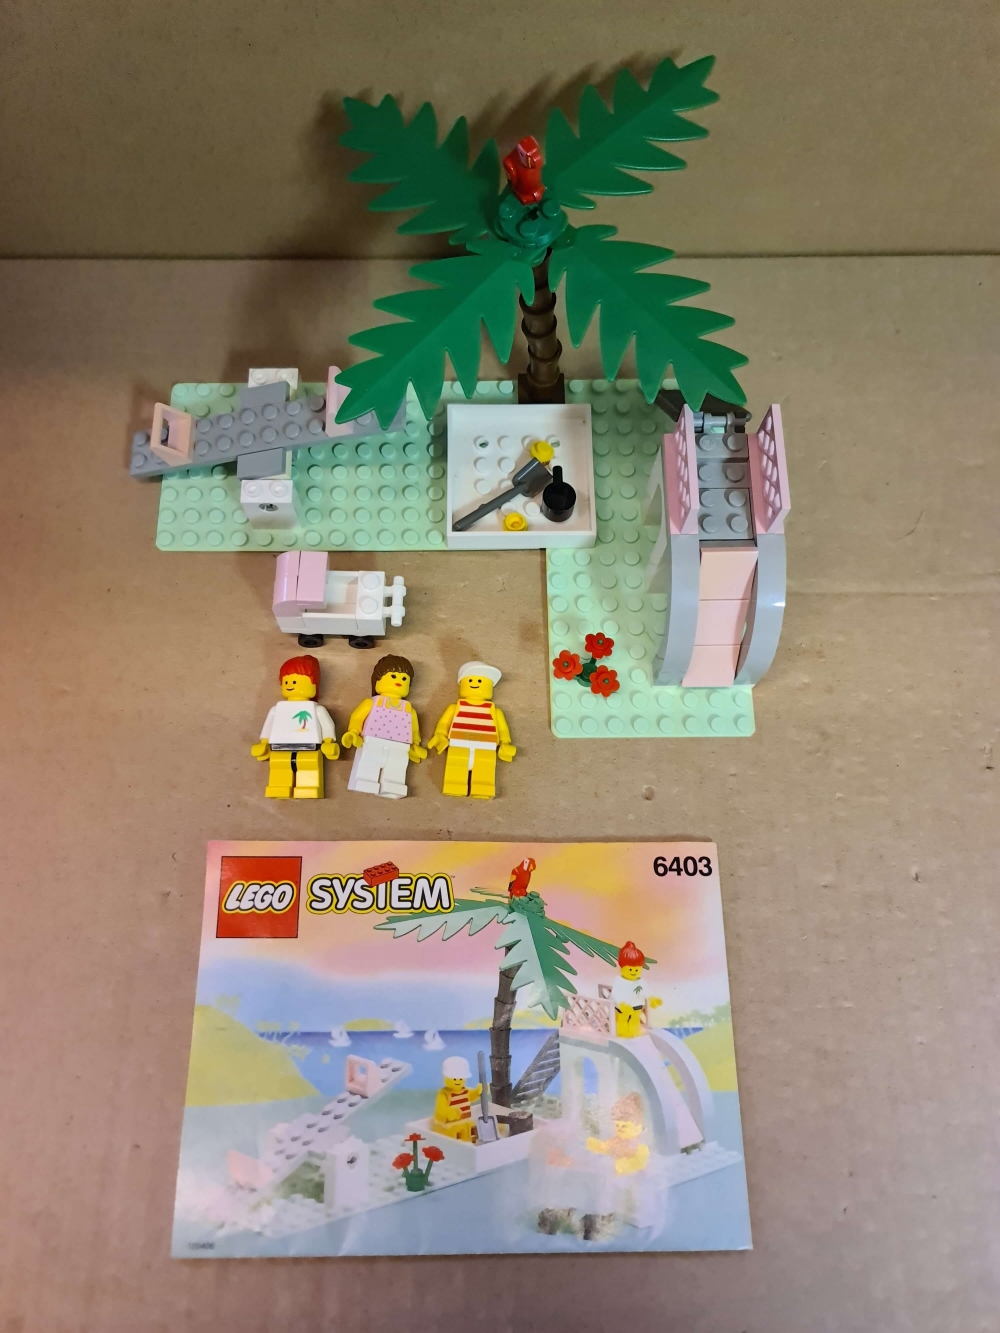 Sett 6403 fra Lego Paradisa serien
Fint sett. Komplett med manual.

Alle klistremerker på plass i god stand.

